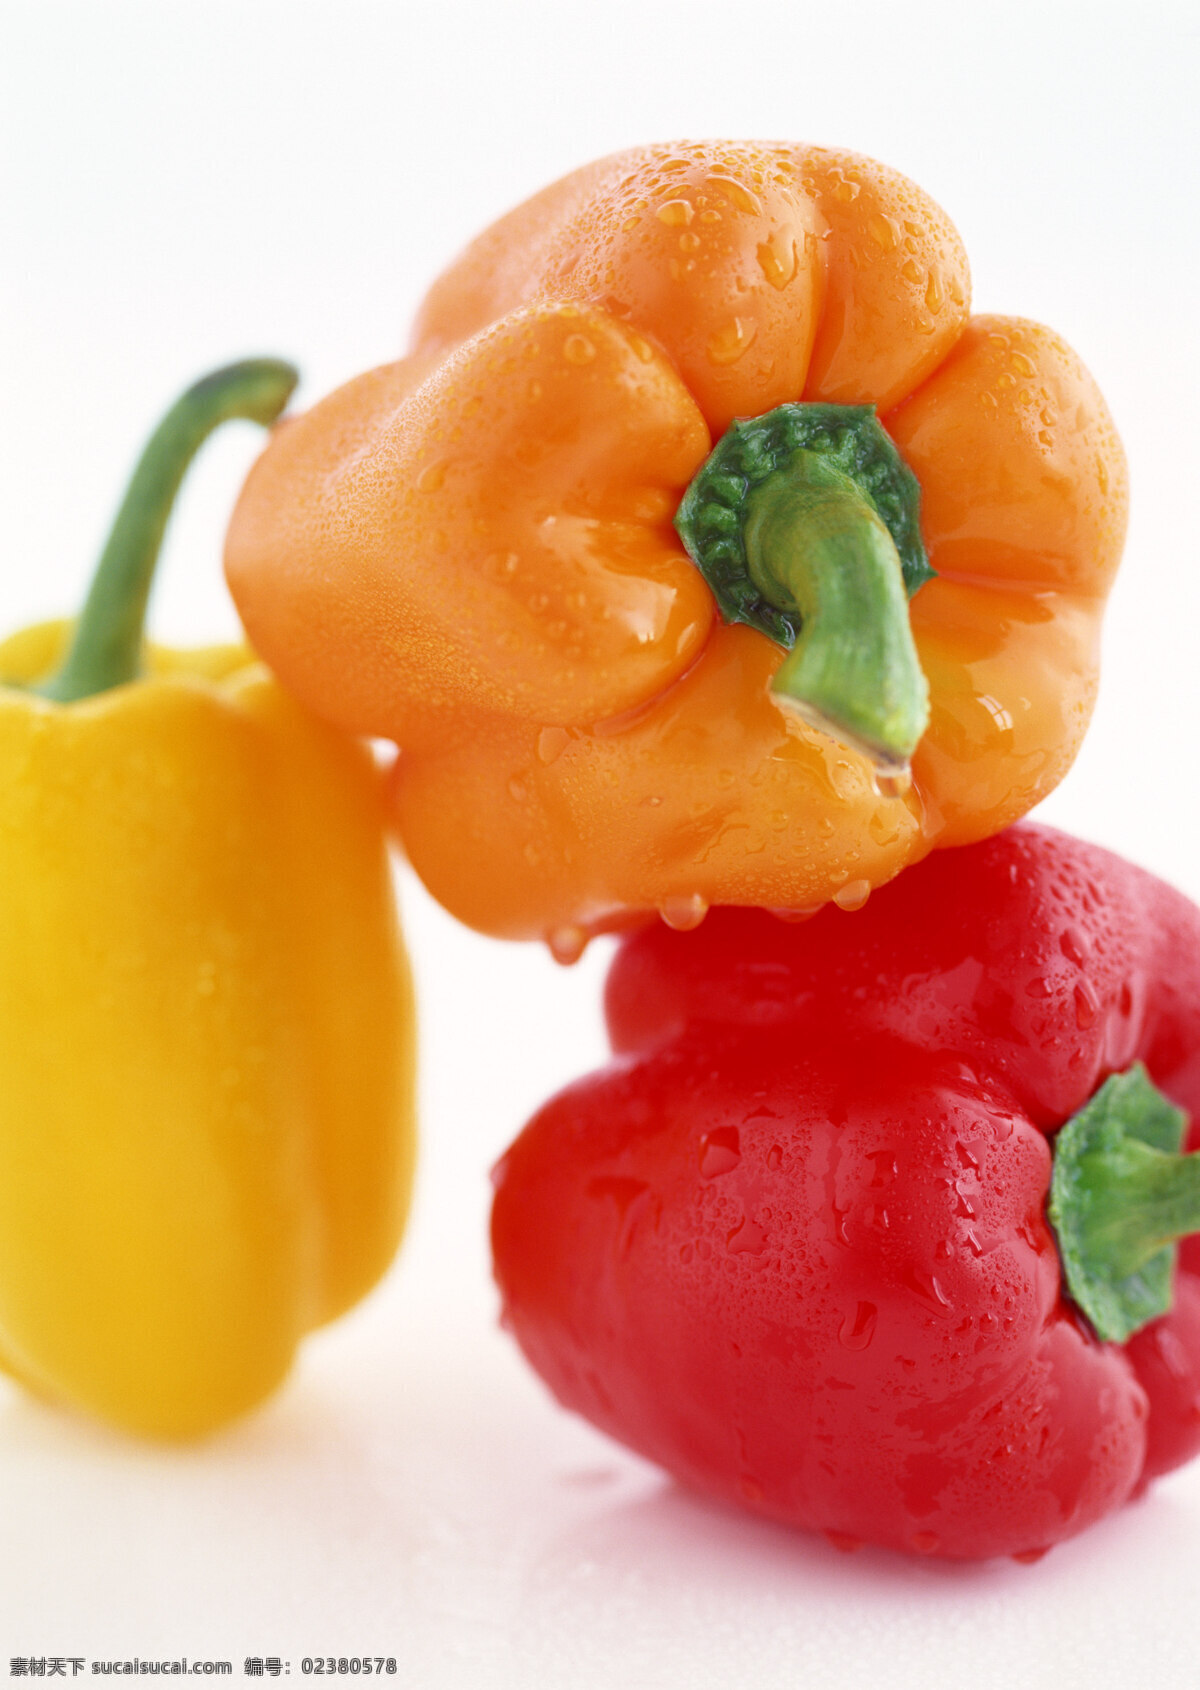 辣椒 辣椒图片 摄影图 食材 蔬菜 新鲜 红黄两色